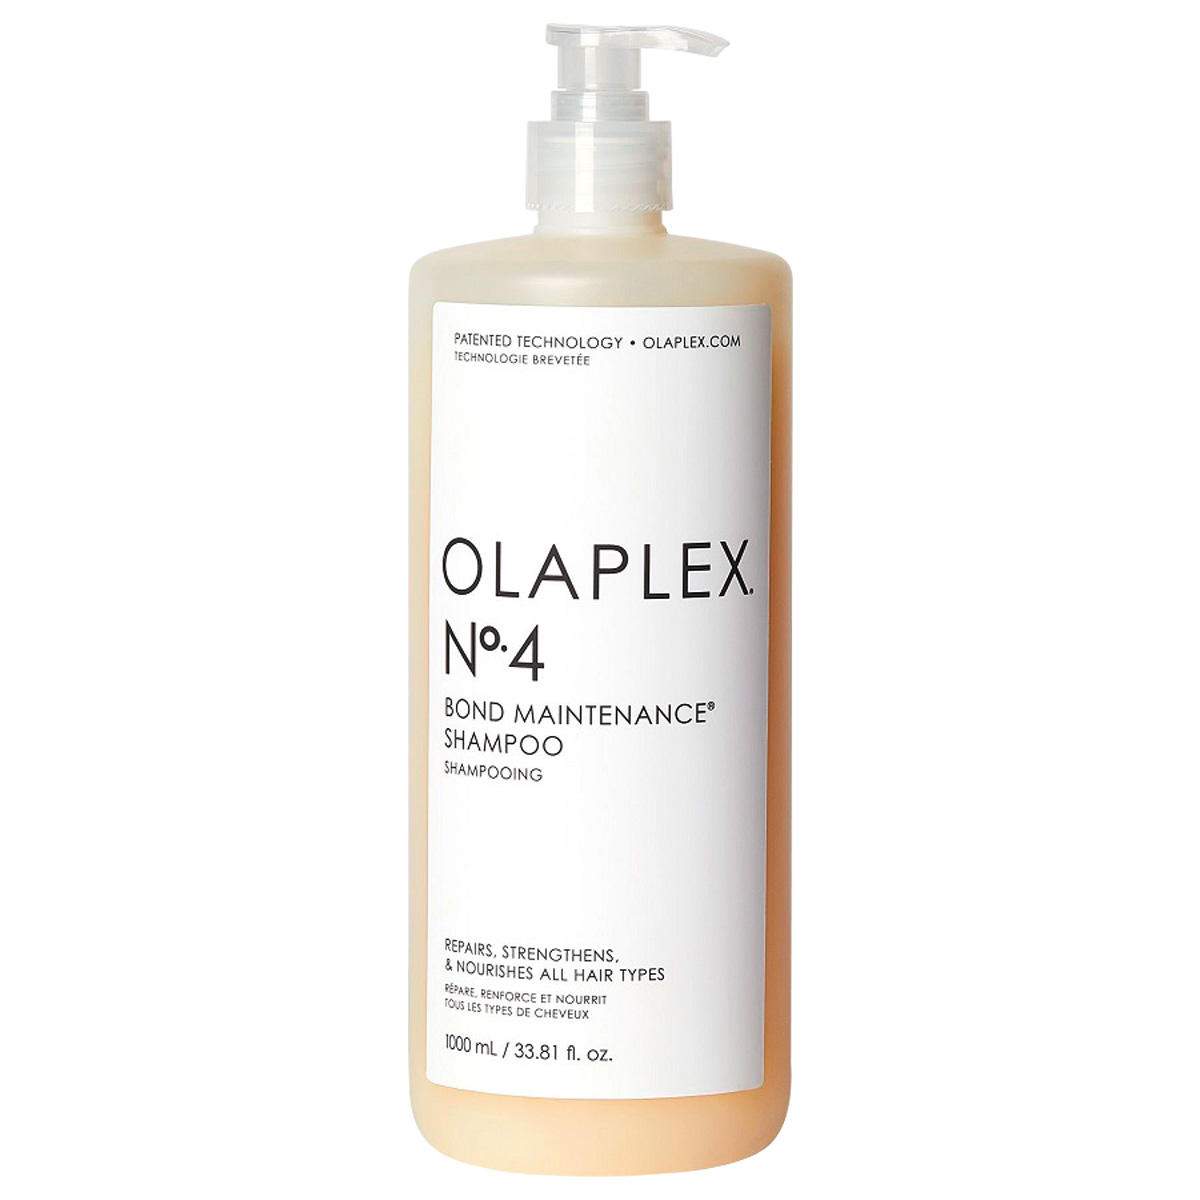 Olaplex Bond Maintenance Shampoo No. 4 1 litre